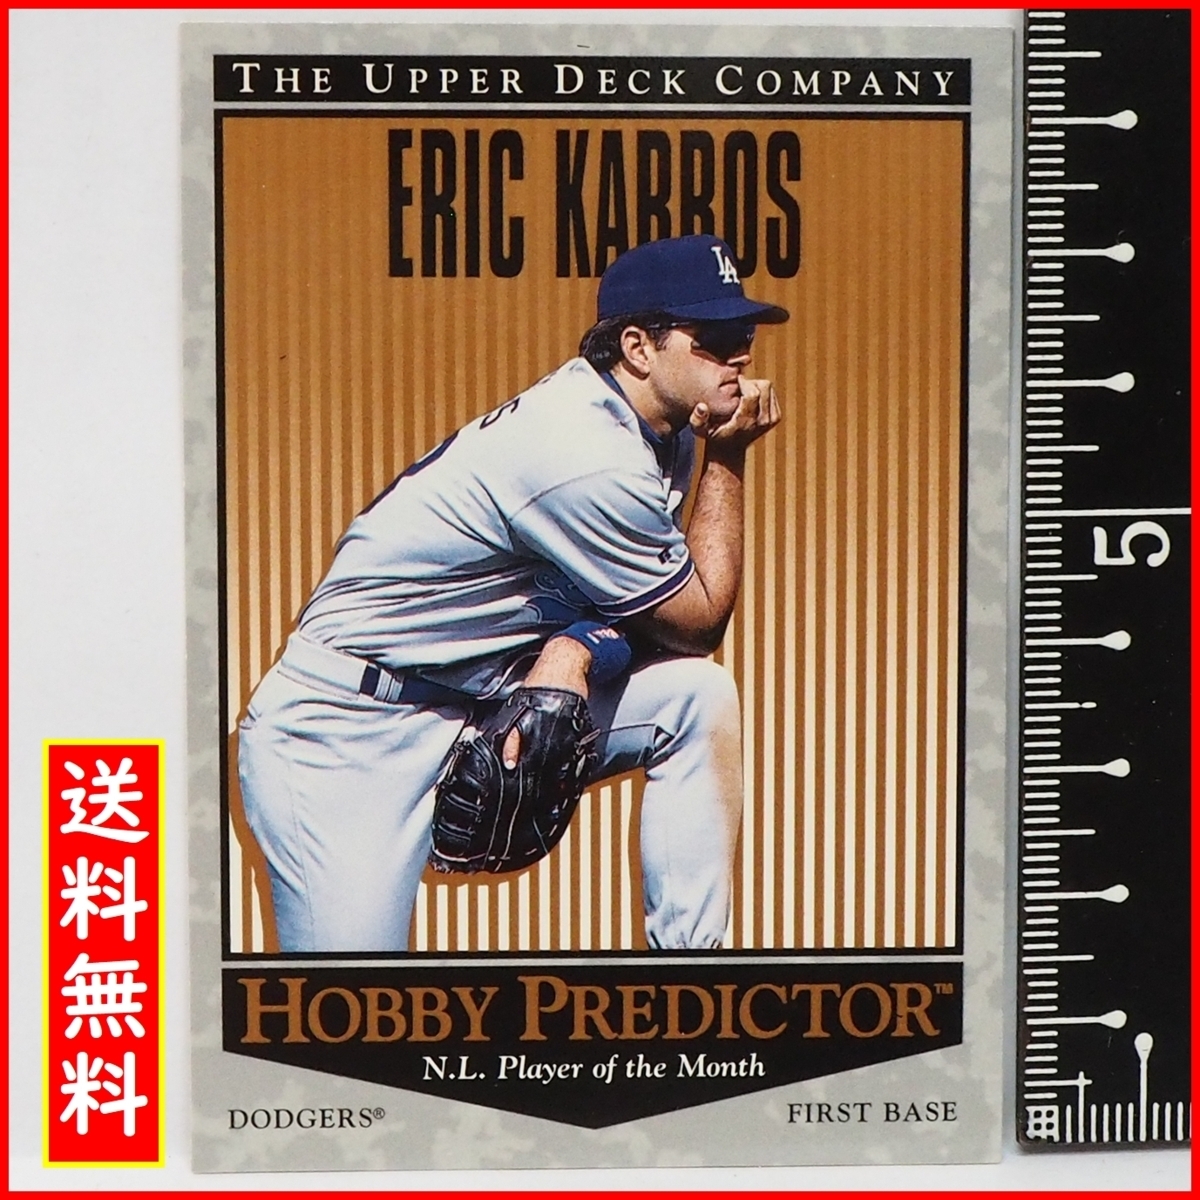 1996 Верхняя колода #H36 Хобби Предиктор [Эрик Каррос (Доджерс)] 1996 MLB Высшая лига Бейсбольная карта Бейсбольная карточка Верхняя палуба [Включена доставка]